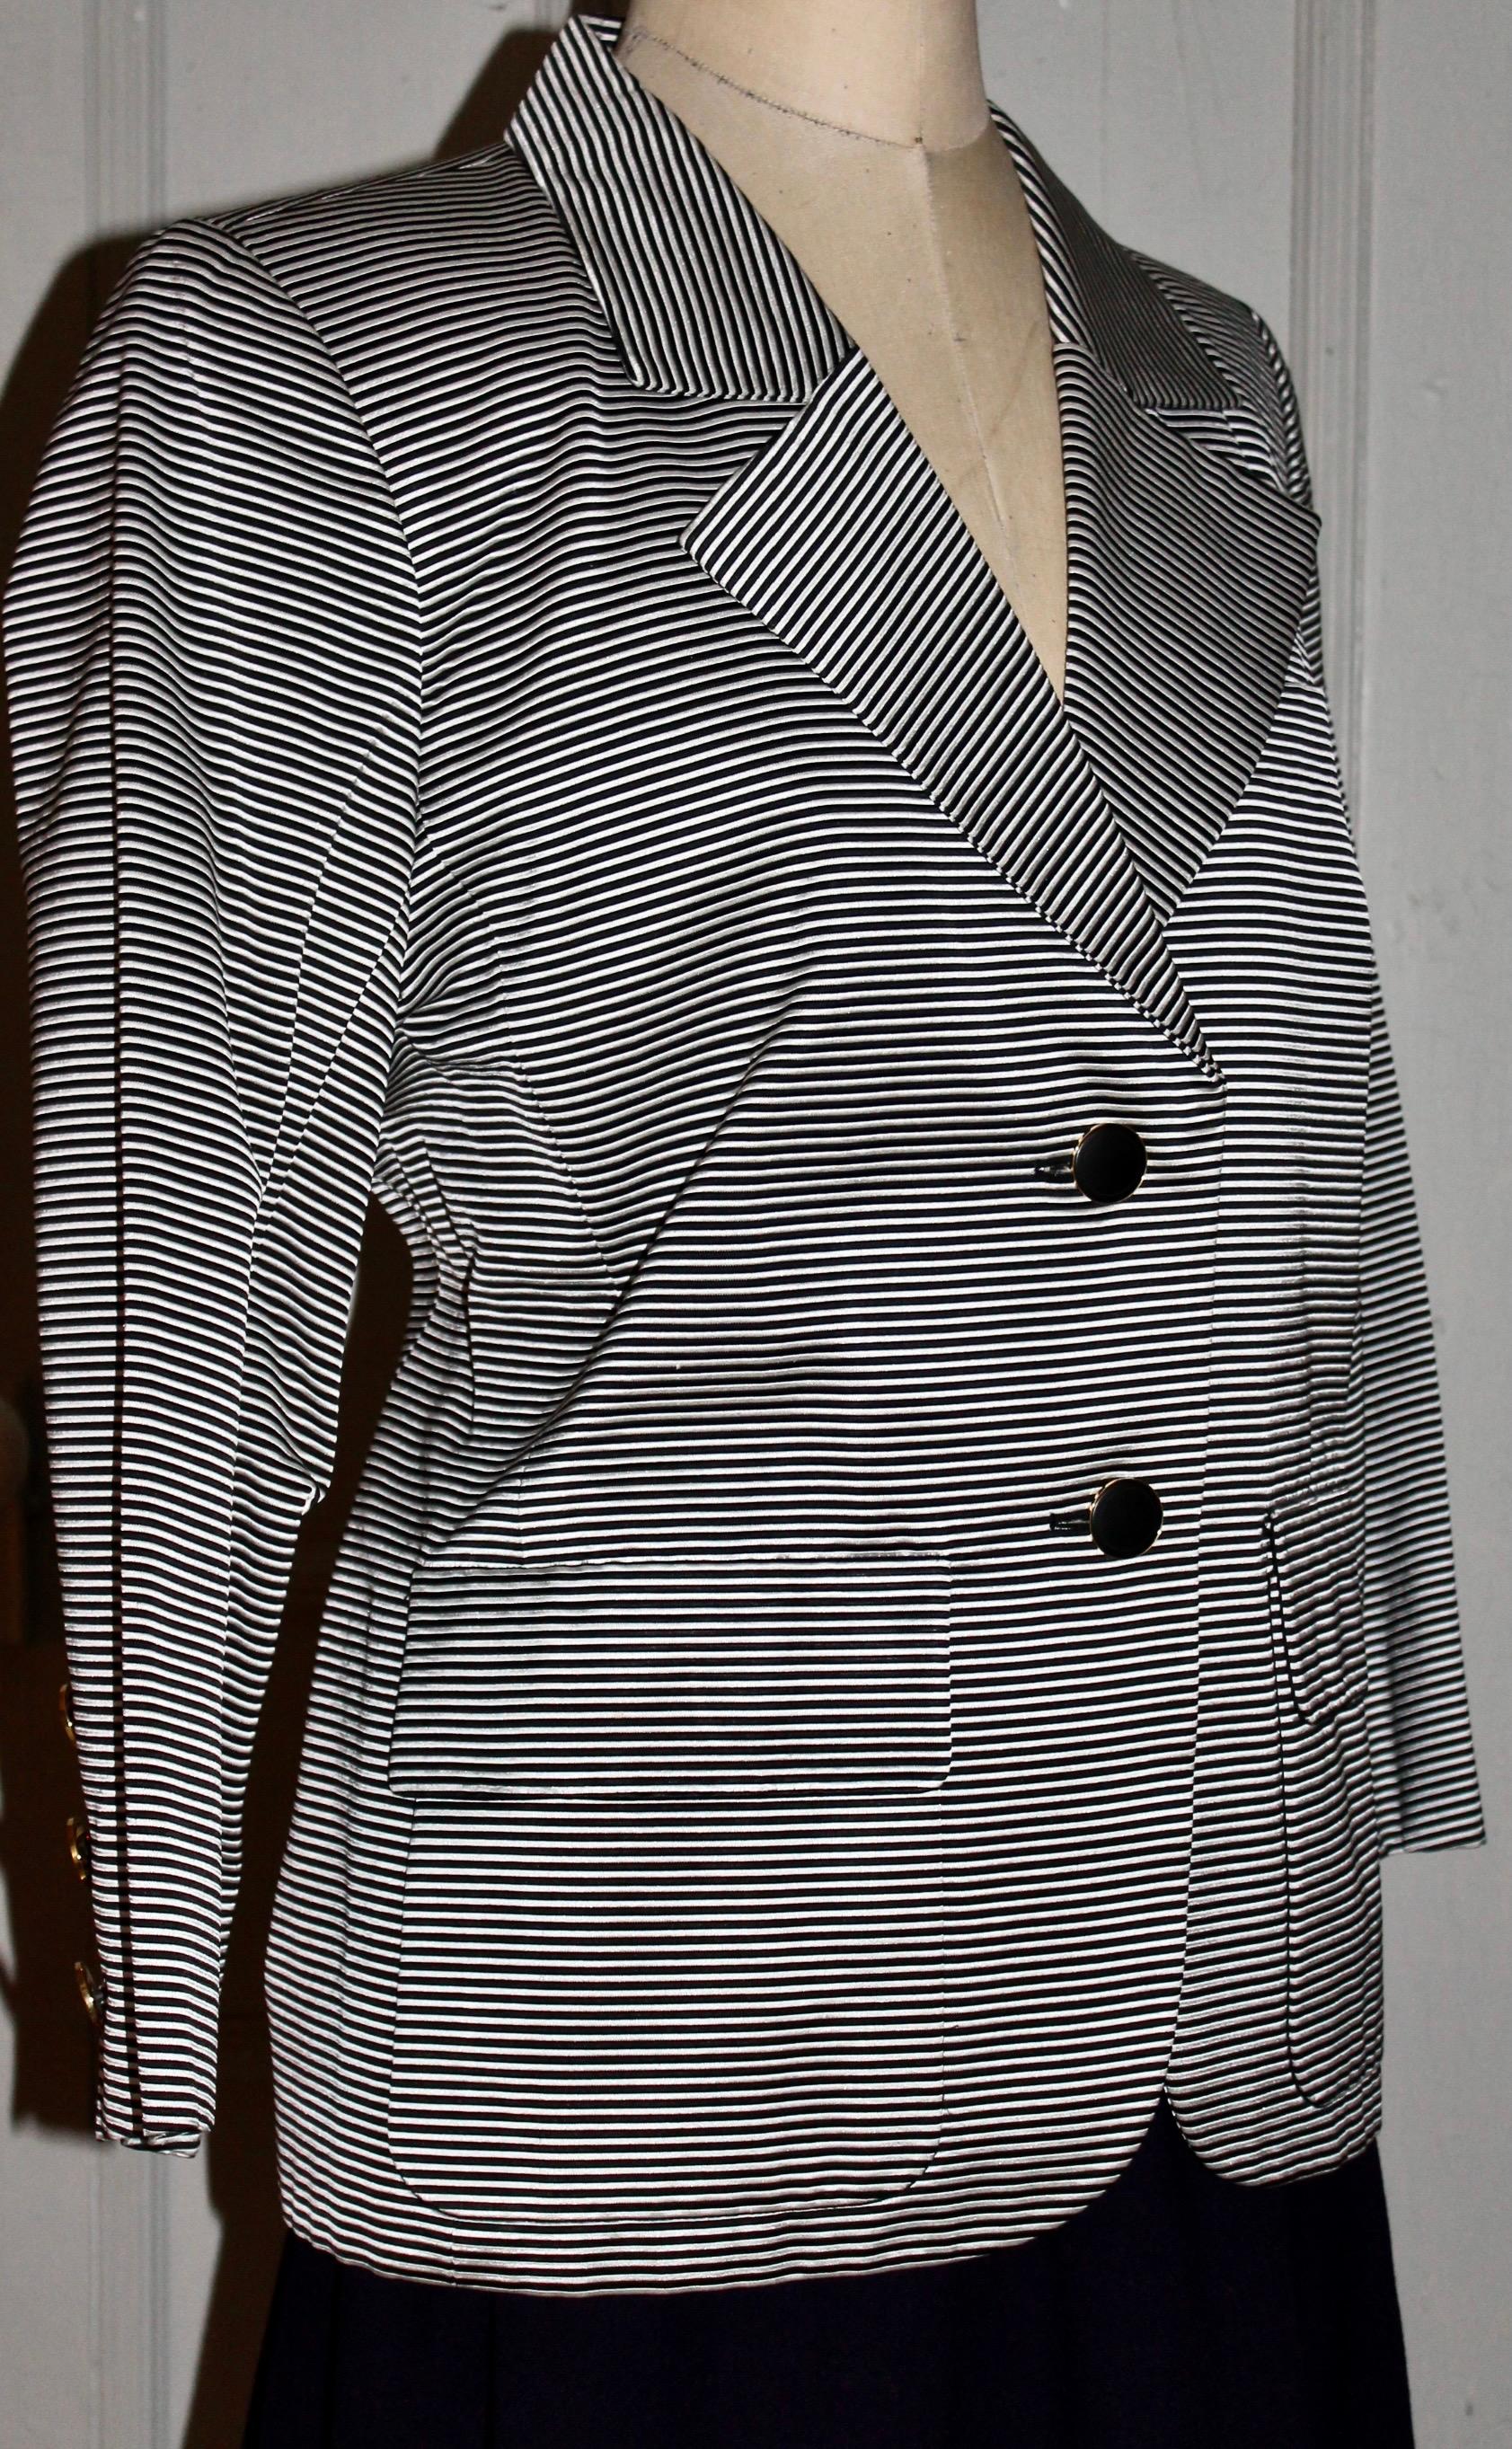 Eine YSL Rive Gauche Jacke aus Acetat/Baumwolle mit schwarzen und weißen horizontalen Nadelstreifen.
EU Größe 44, gepolsterte Schultern